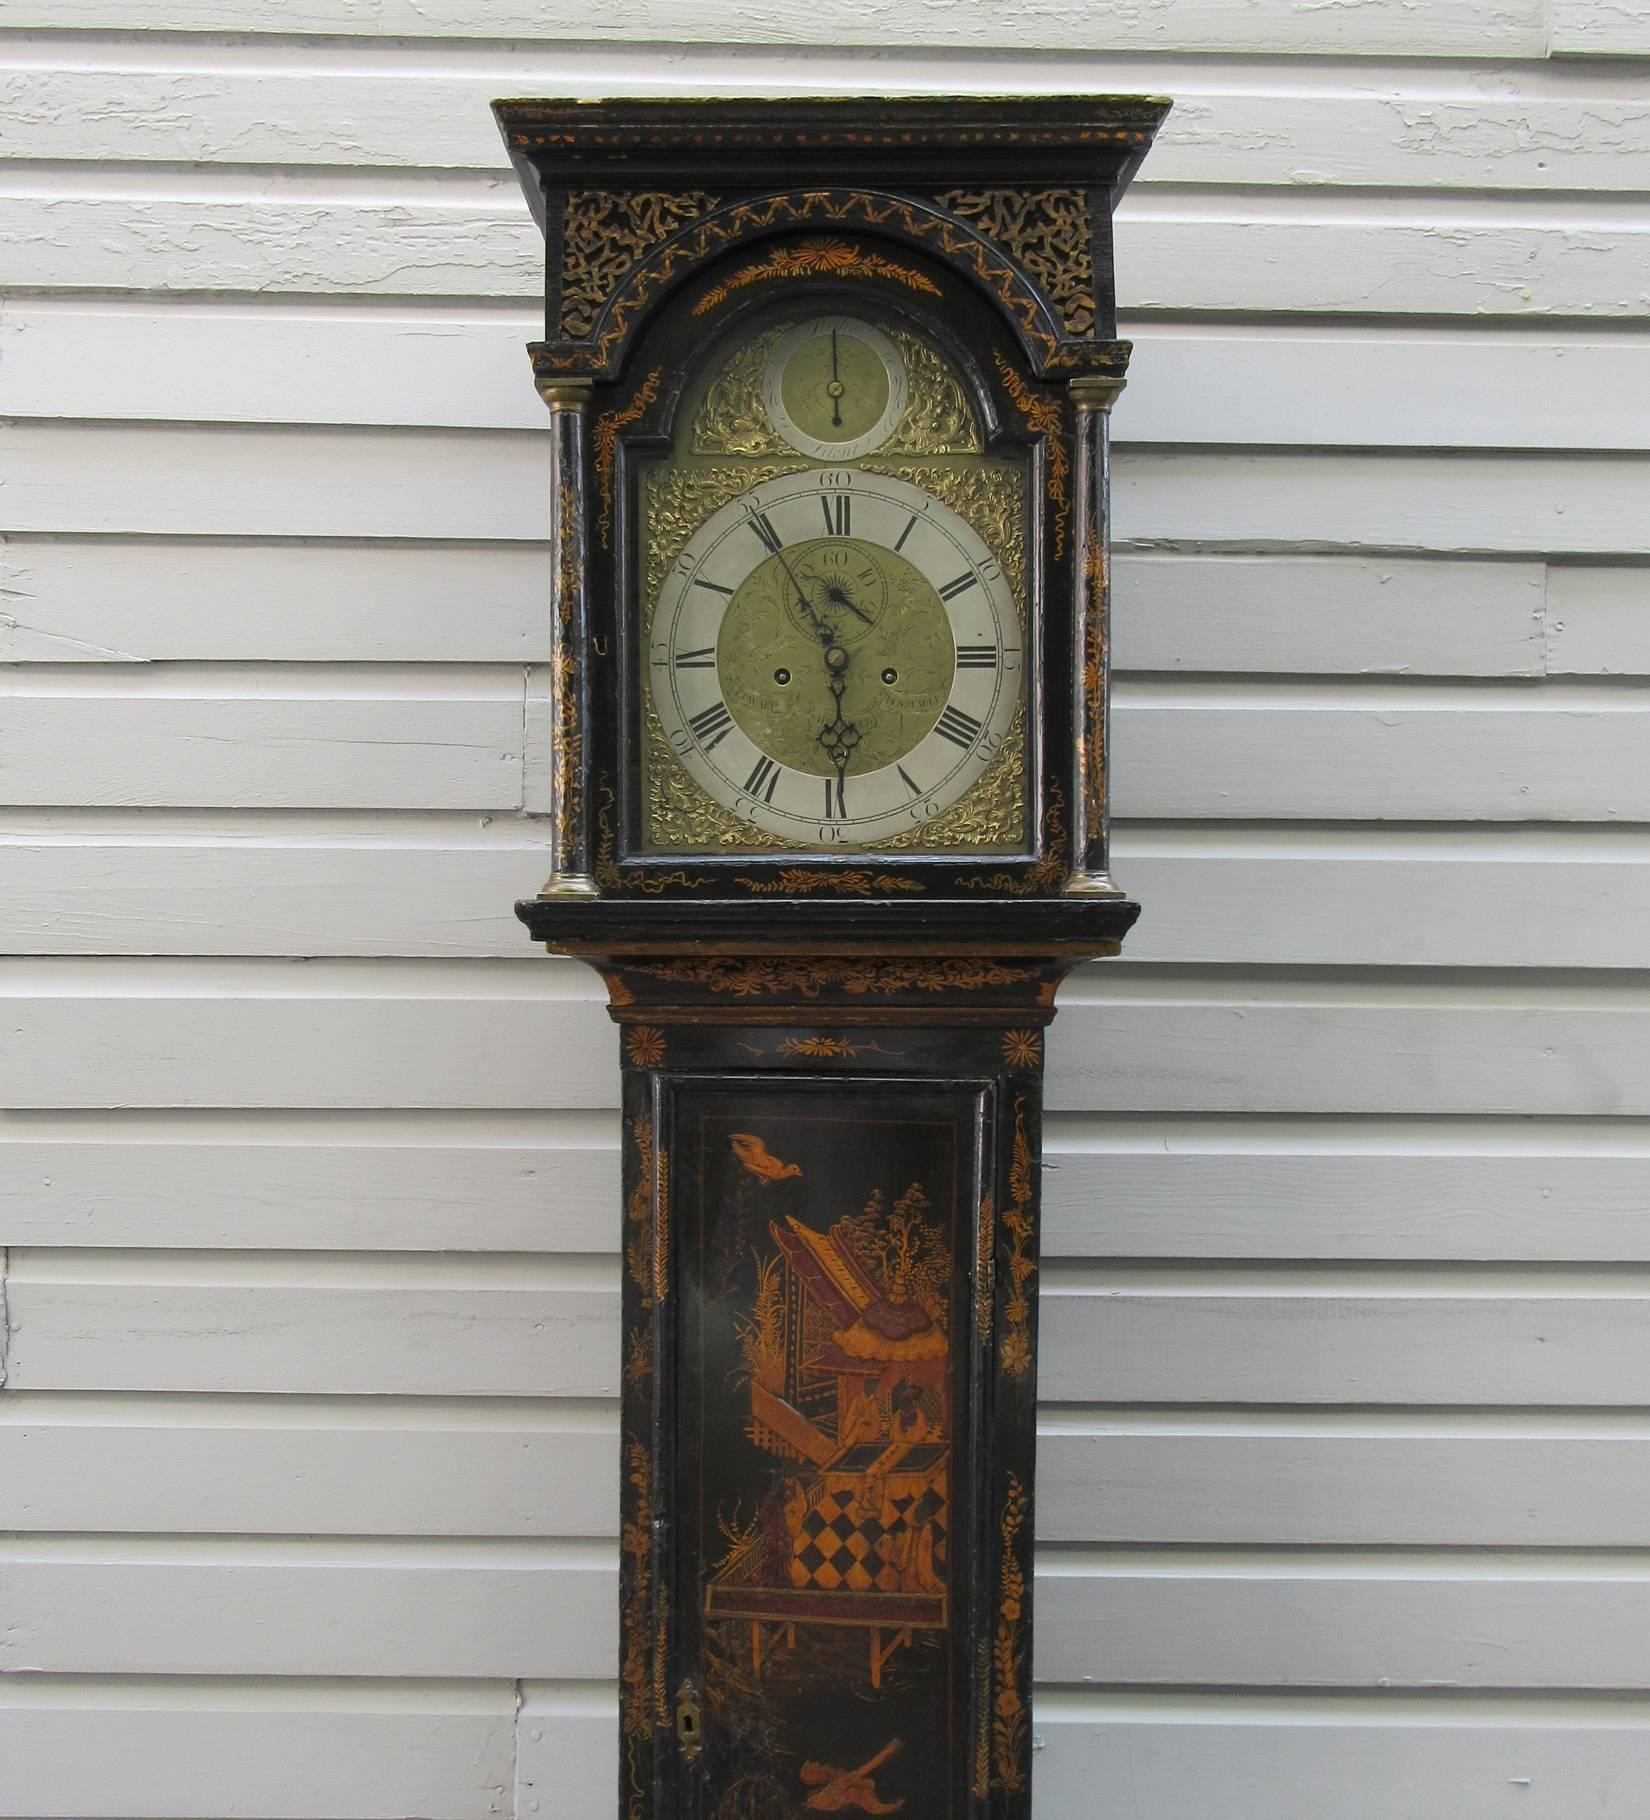 18th century tall case clock